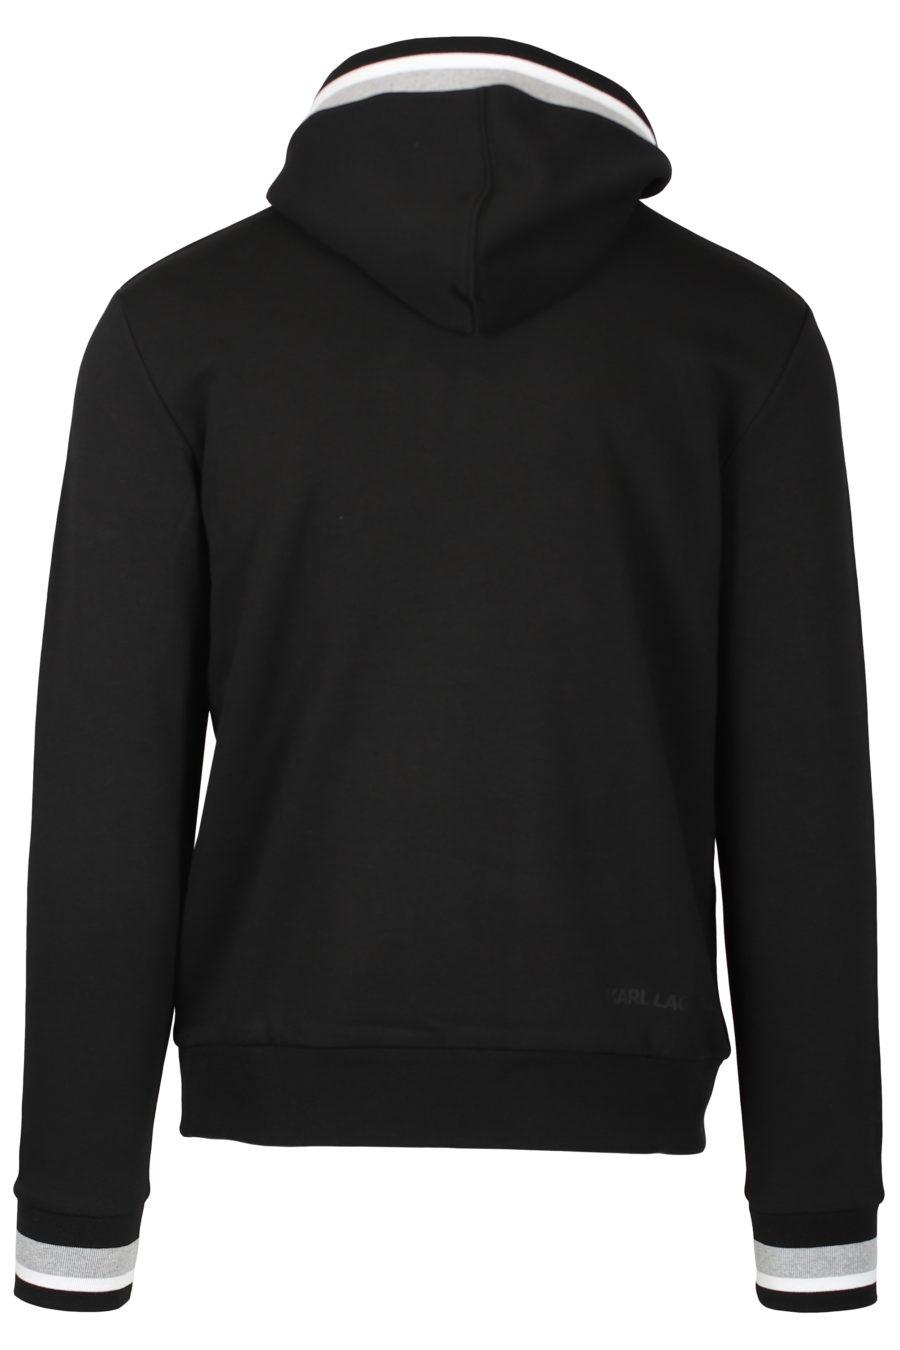 Sudadera negra con capucha y logotipo negro - IMG 2573